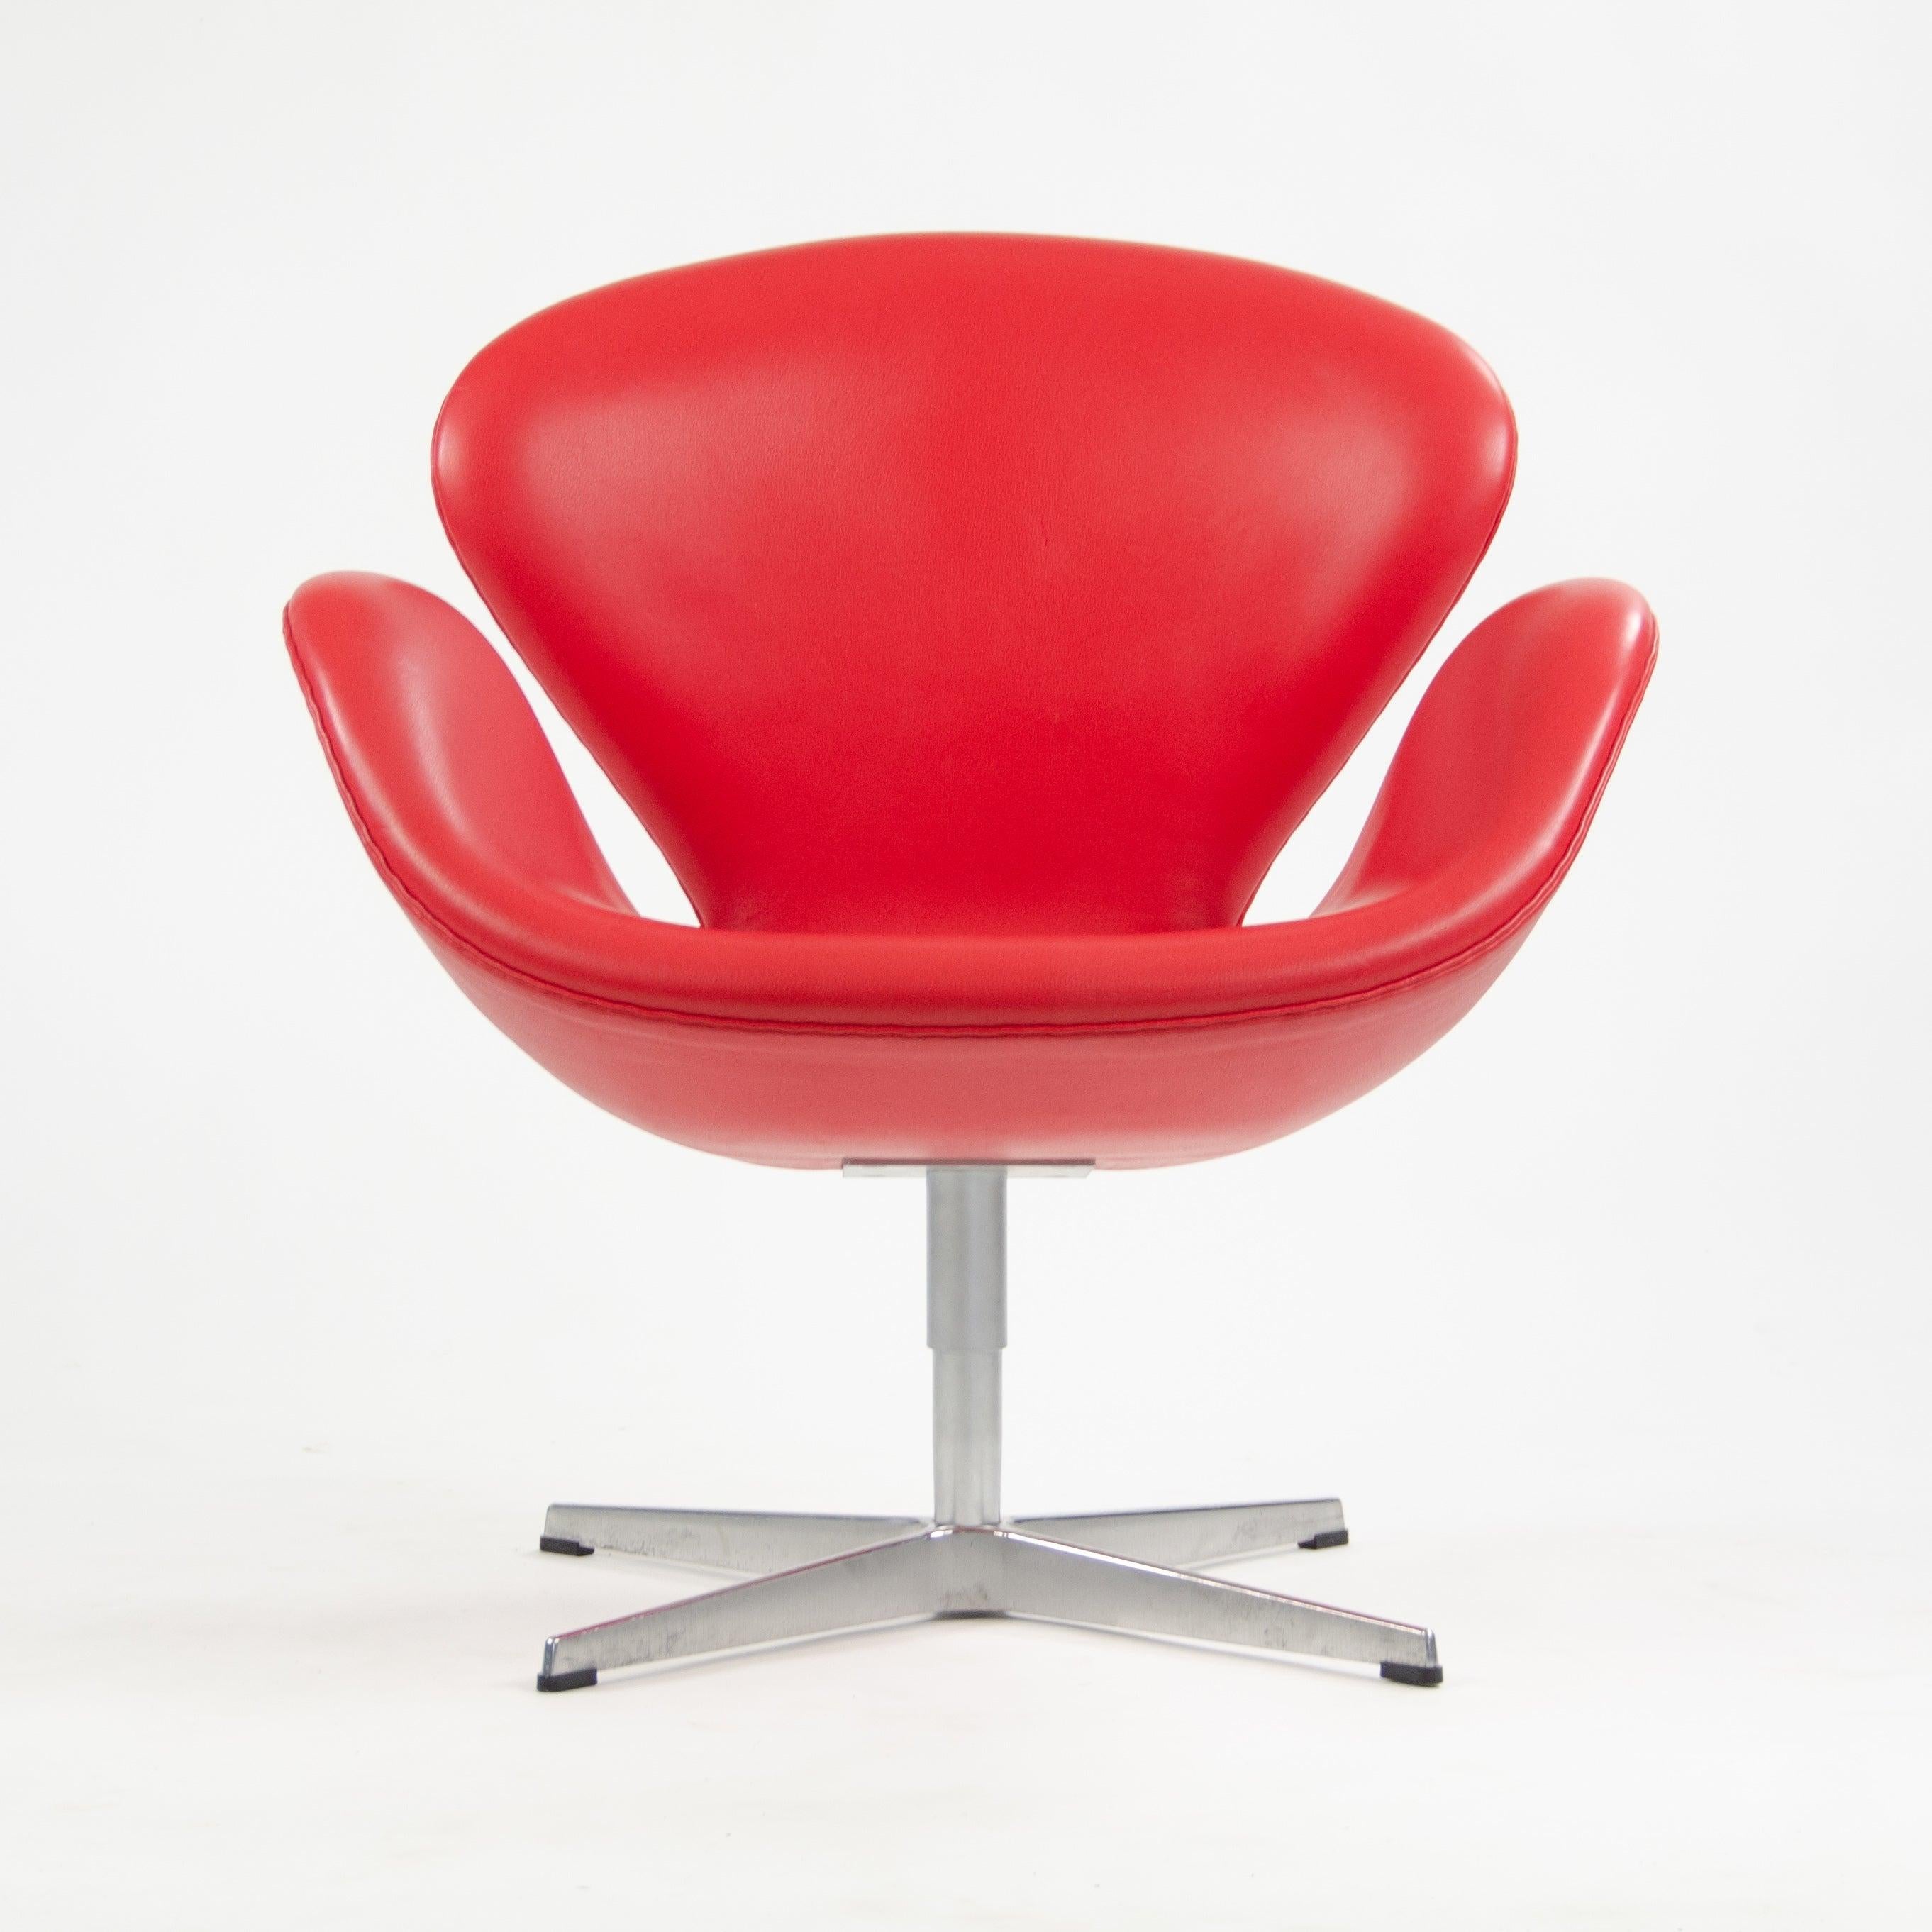 Sont mises en vente quatre (vendues séparément) chaises de cygne Arne Jacobsen de production récente, produites par Fritz Hansen en 2012.

Les chaises sont dans un état d'origine exceptionnel ! Voir les photos pour référence.

Les chaises sont